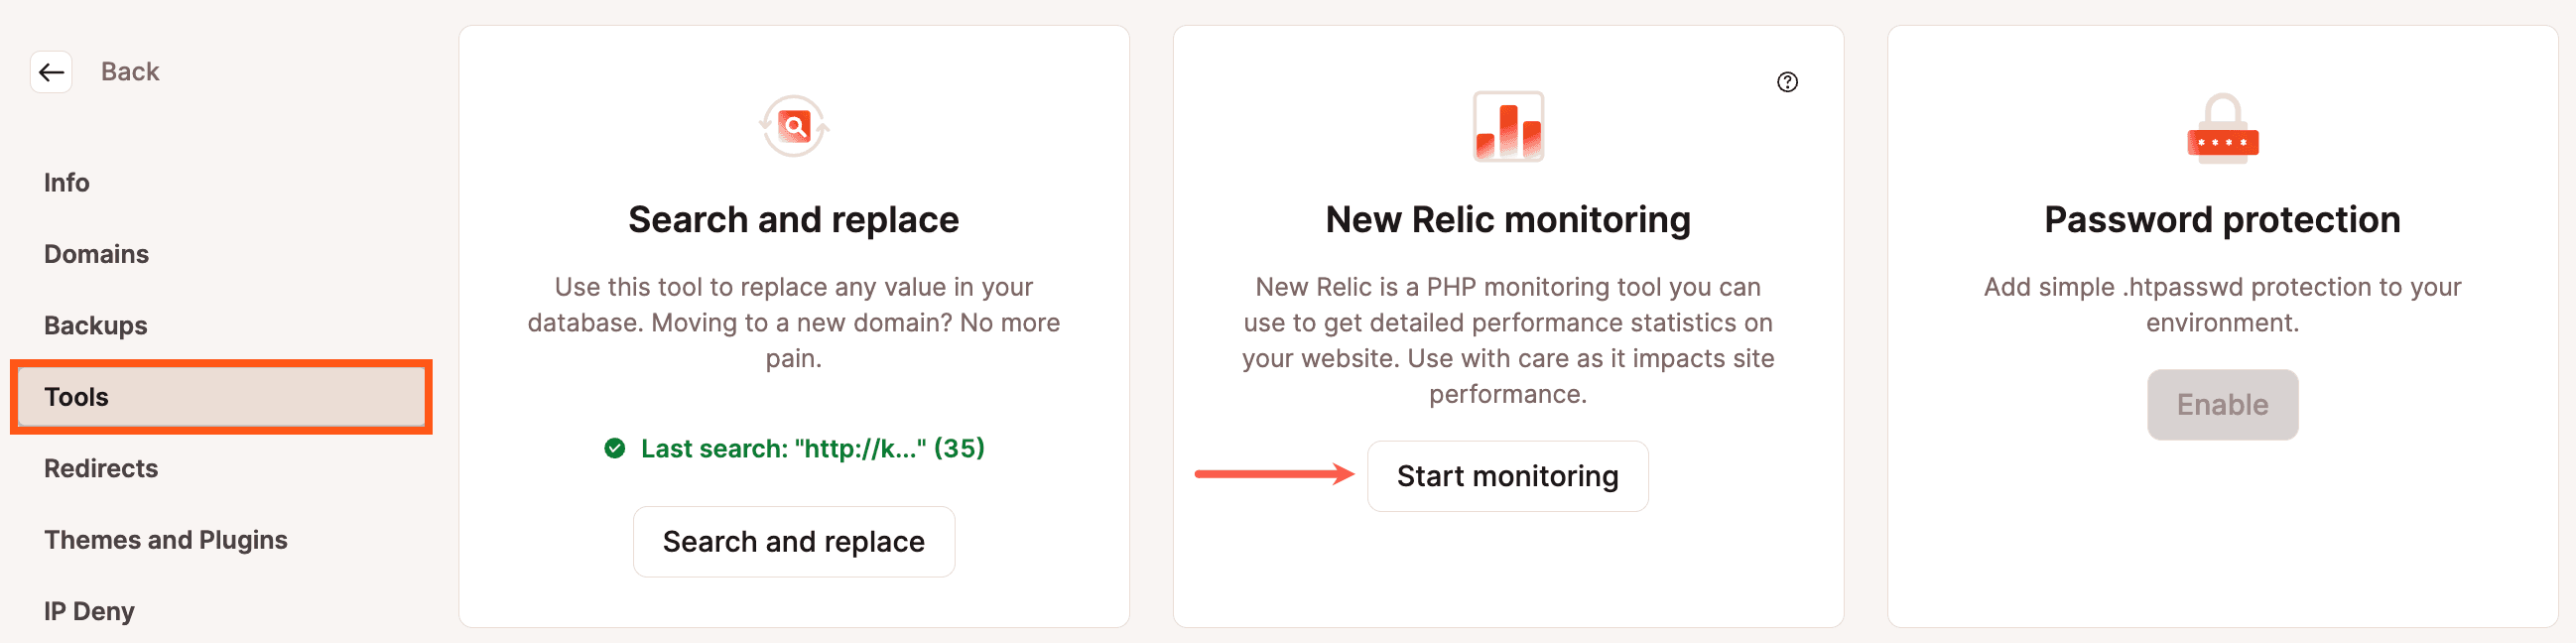 Inicia la monitorización de New Relic para WordPress en MyKinsta.